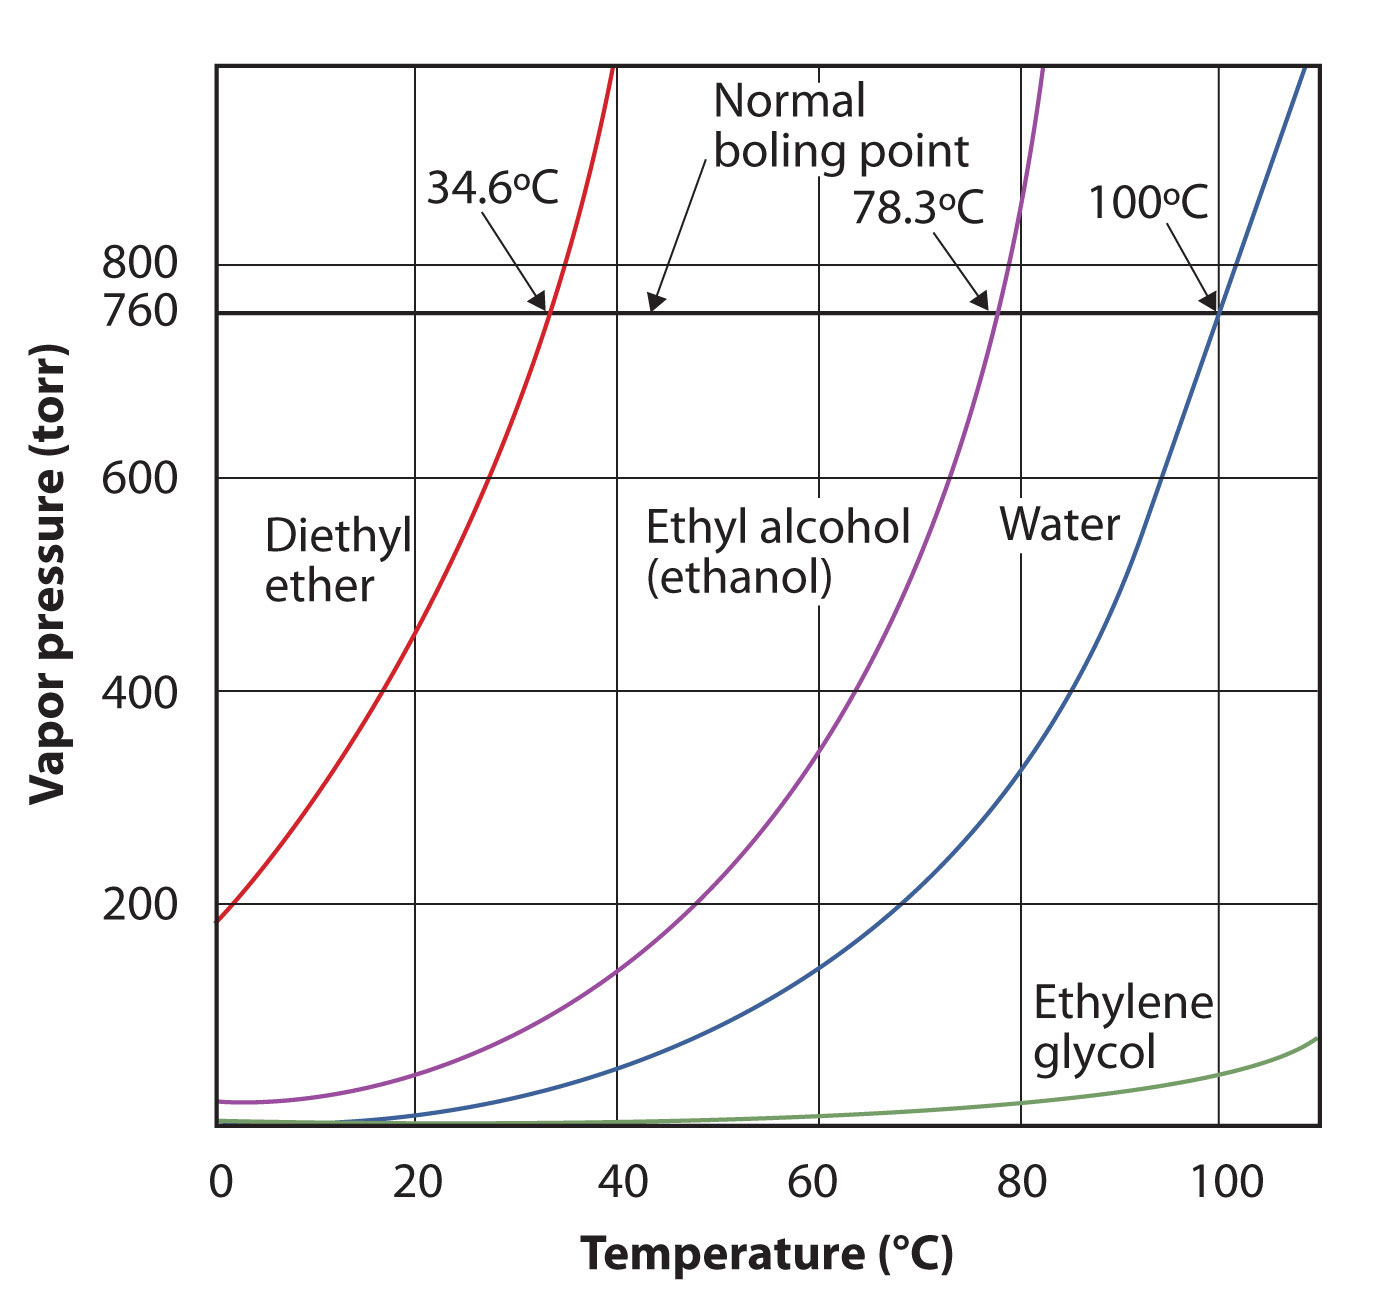 Gráfica de Presión de Vapor vs Temperatura para varios líquidos.